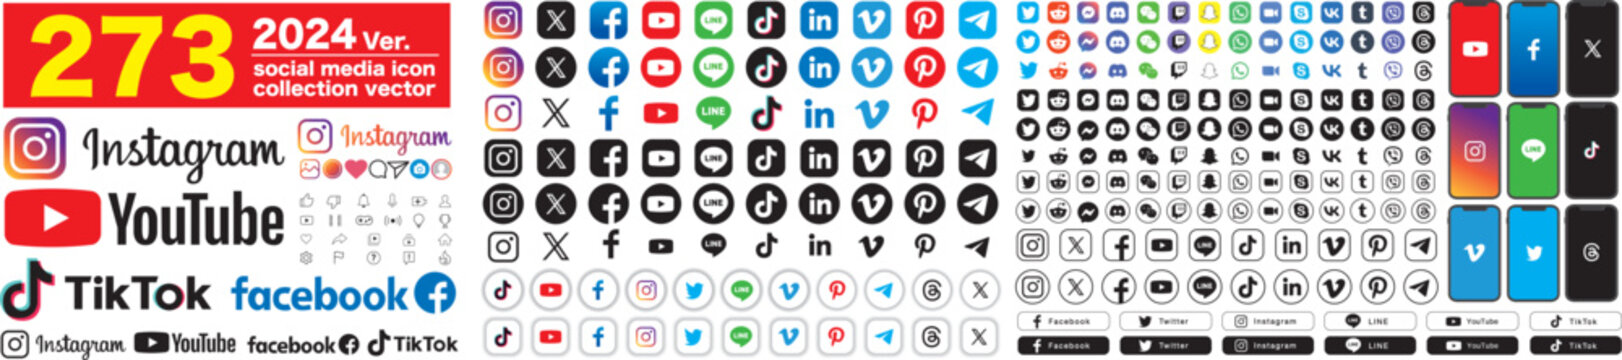 Social media icons. X, Twitter, Youtube, Facebook, Instagram, Pinterest, Vimeo, Skype, Viber, TikTok, Linkedin, Telegram. vector